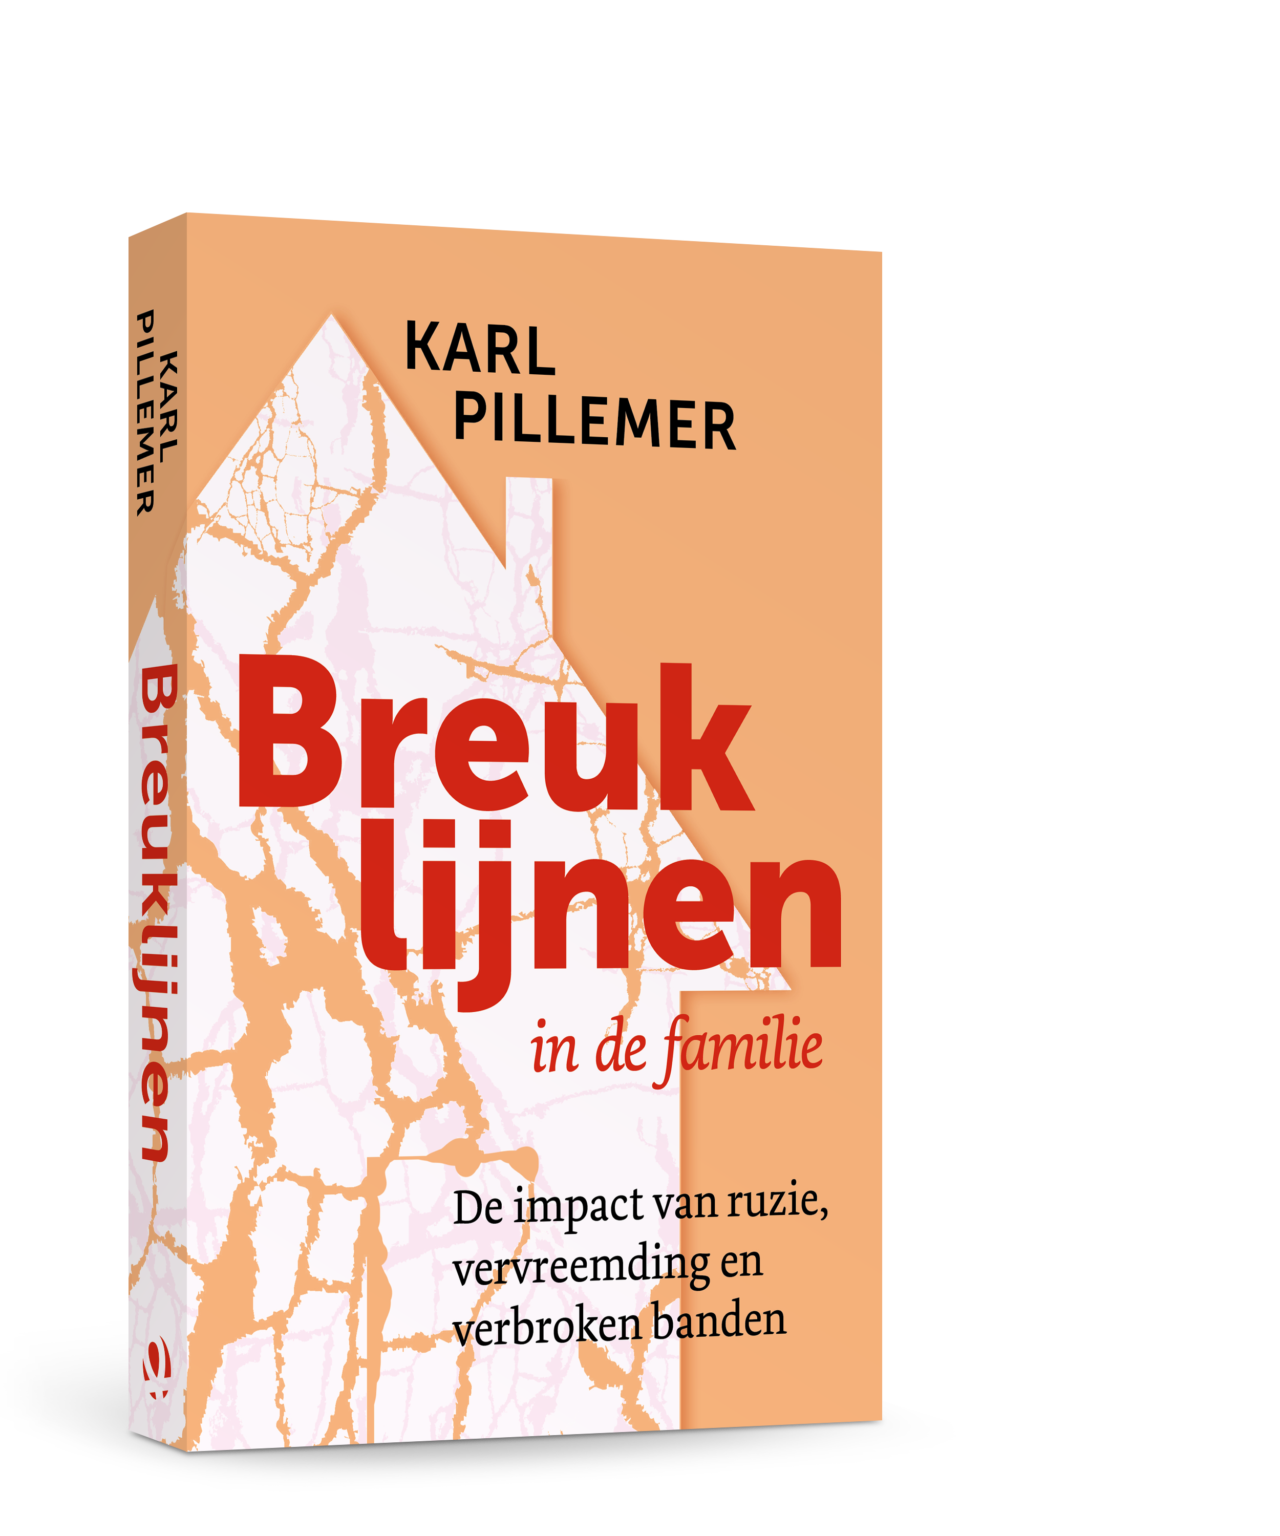 3D-cover van Karl Pillemer-Breuklijnen in de familie. Ondertitel: de impact van ruzie, vervreemding en verbroken banden.